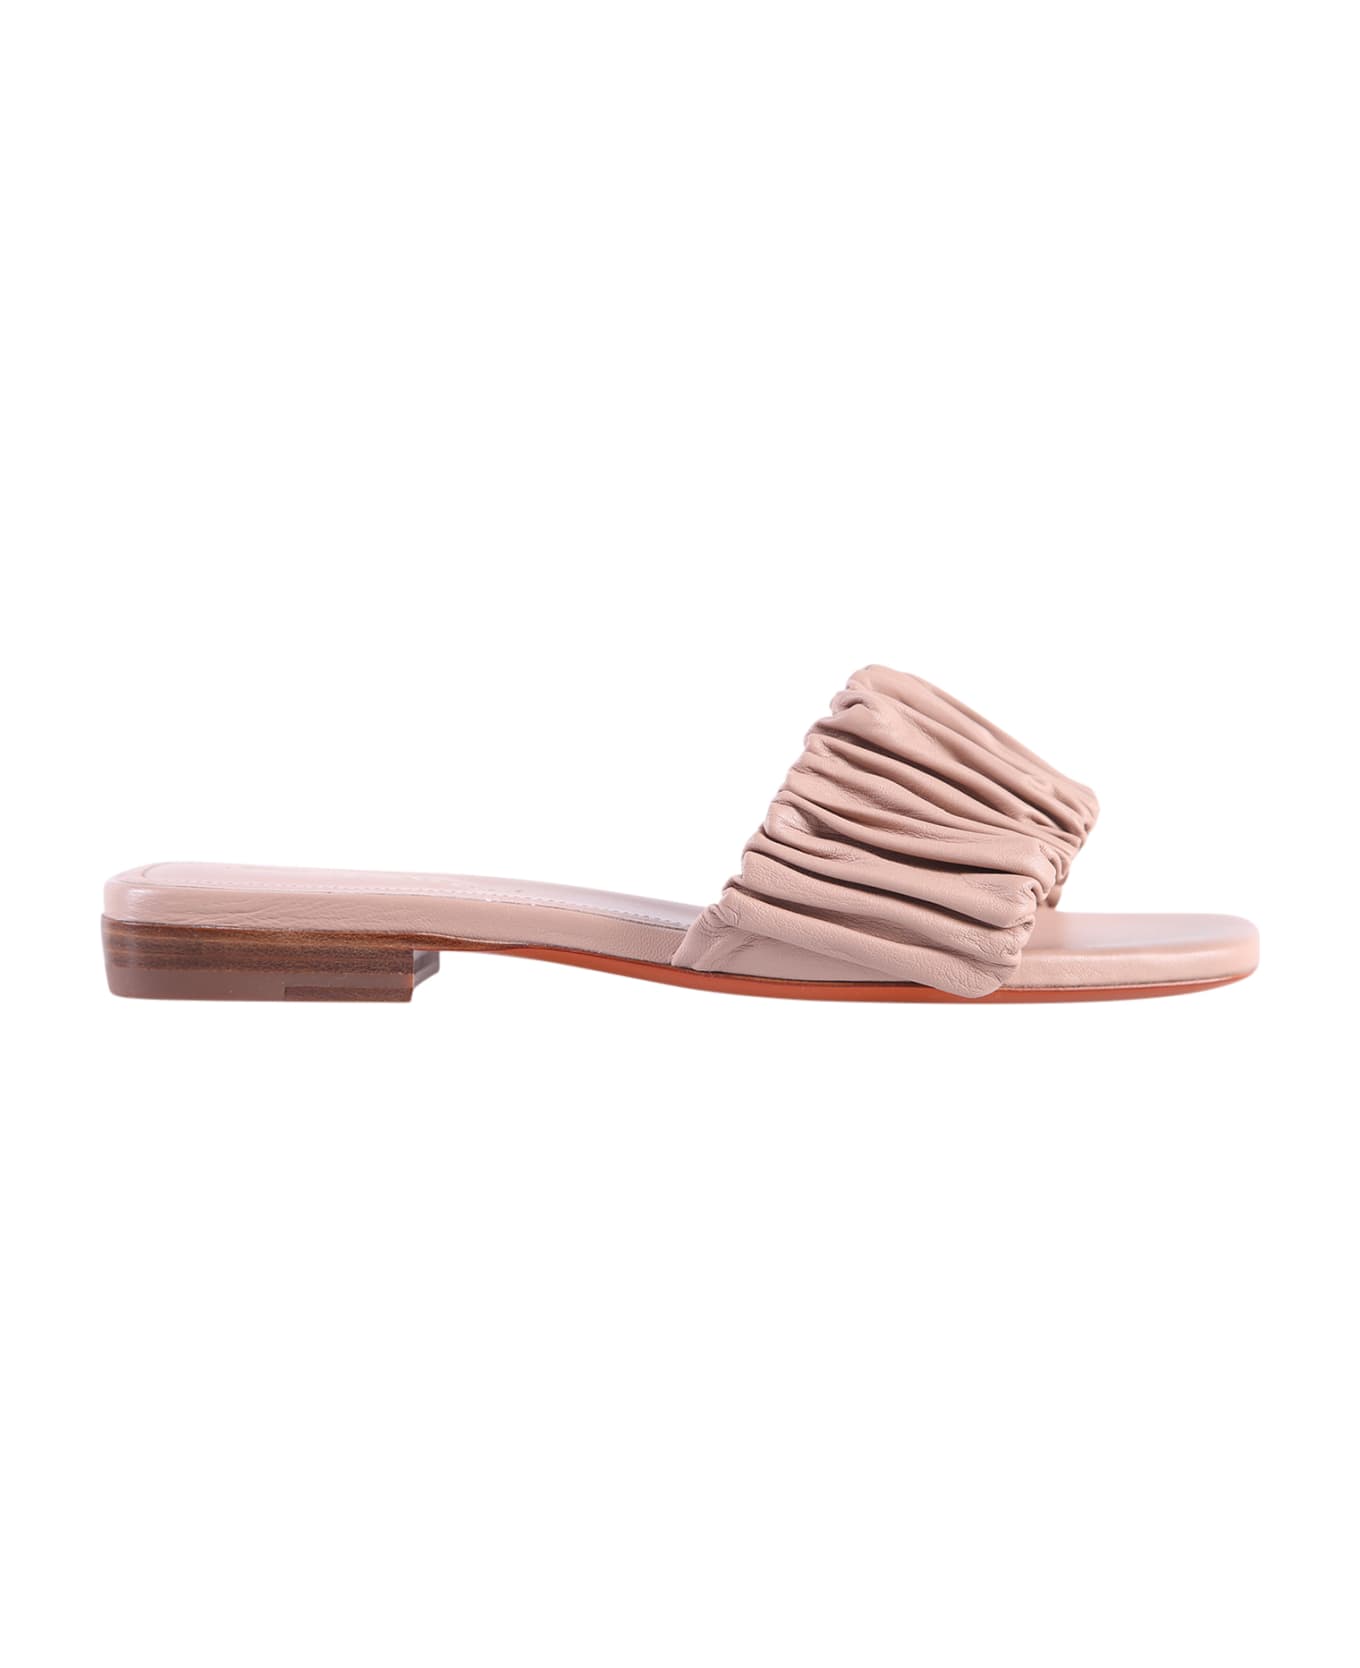 Santoni Fuxia Sandals - Pink